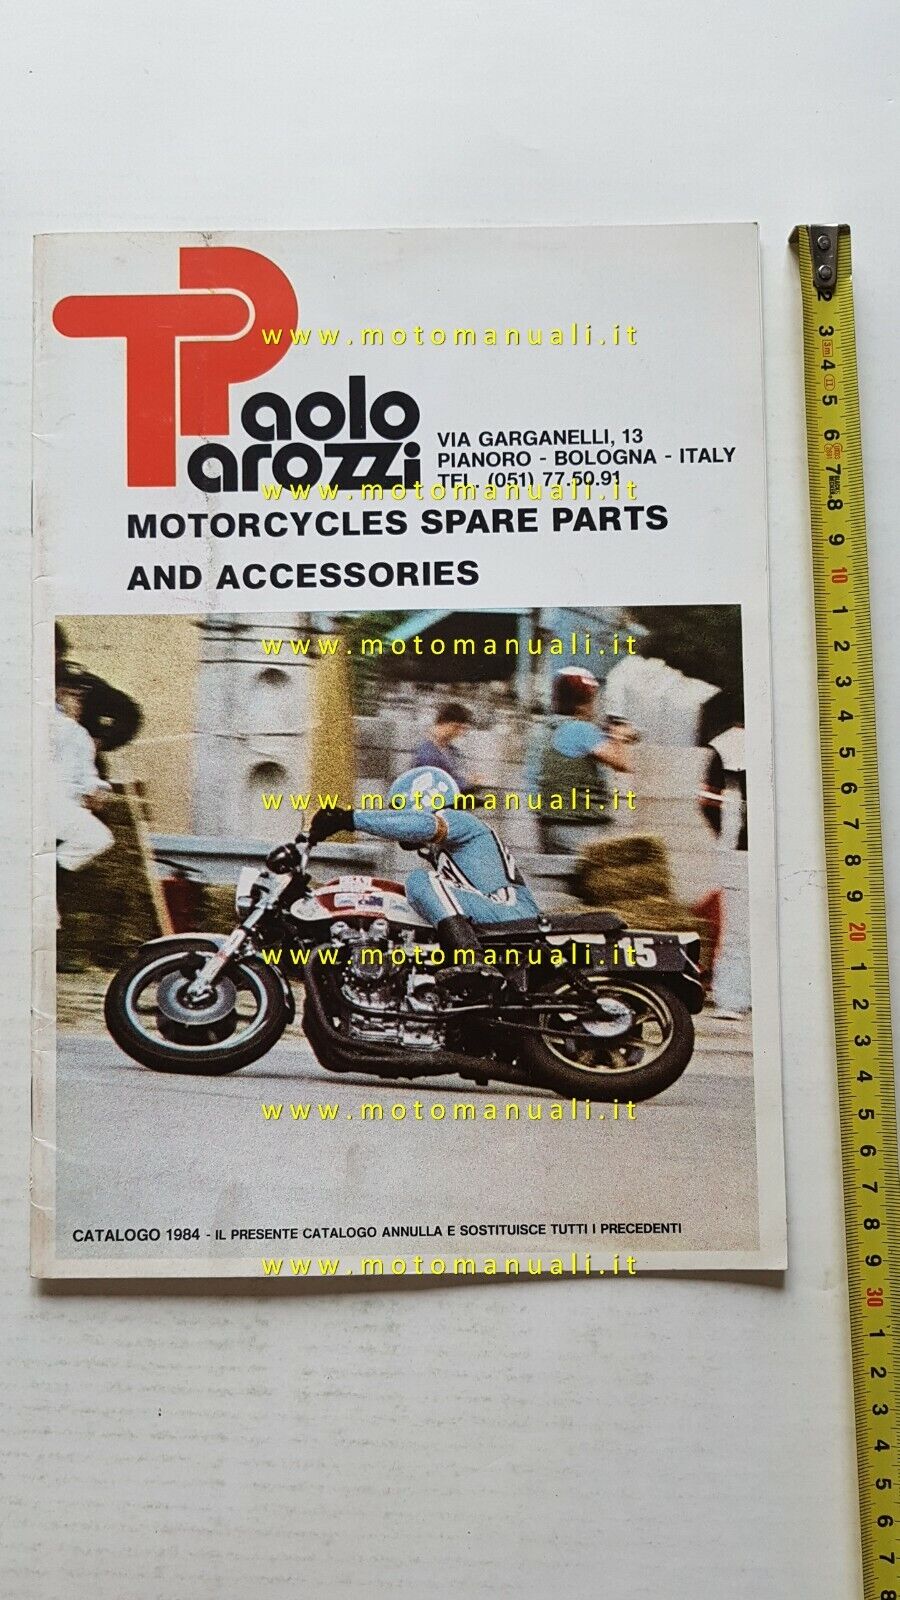 Paolo Tarozzi catalogo accessori parti speciali anni 80 moto originale